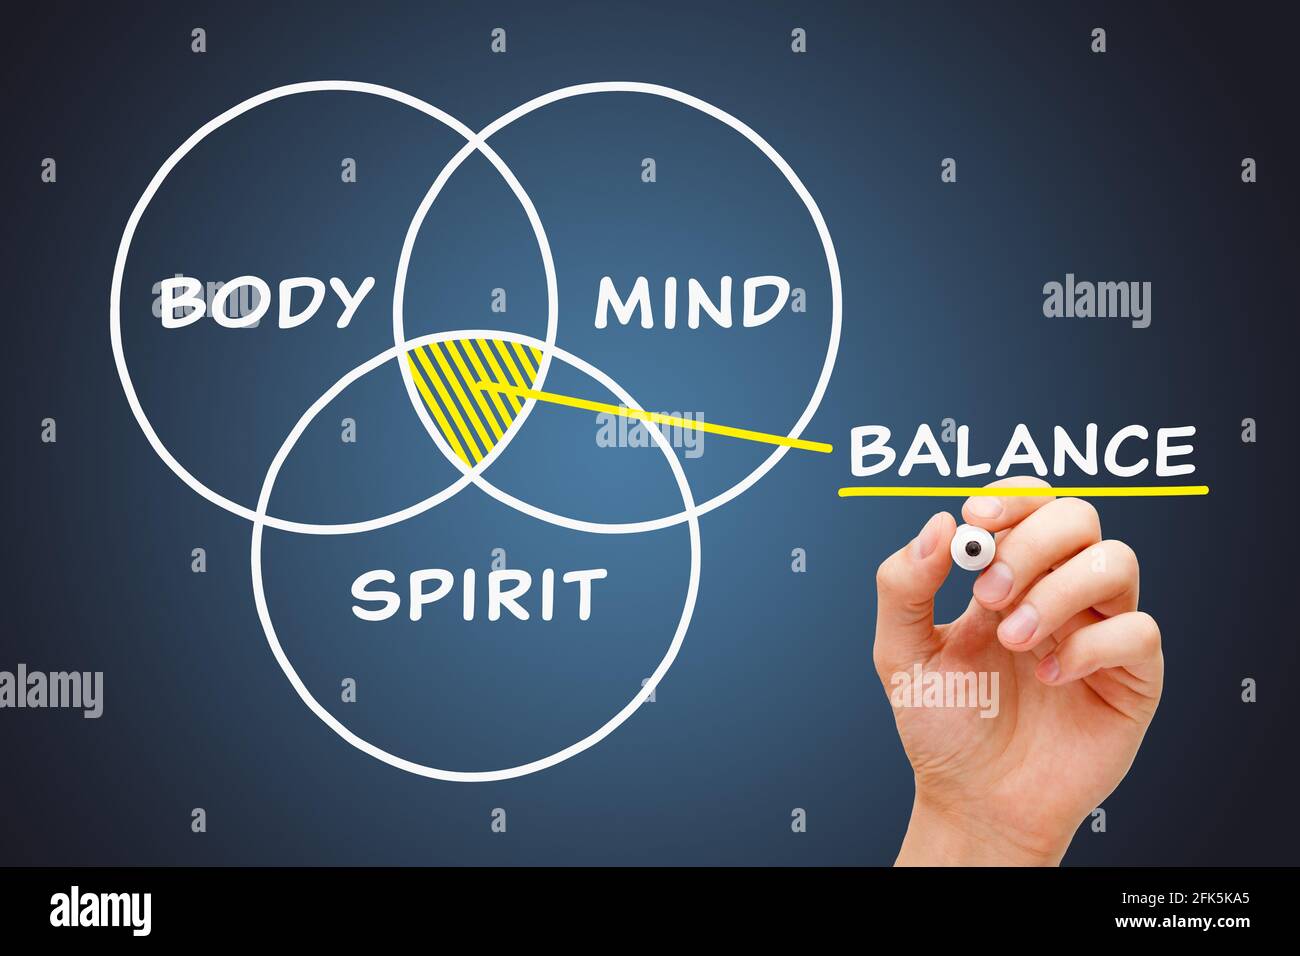 Dessin à la main avec un schéma conceptuel de marqueur sur l'équilibre entre corps, esprit et Esprit. Banque D'Images